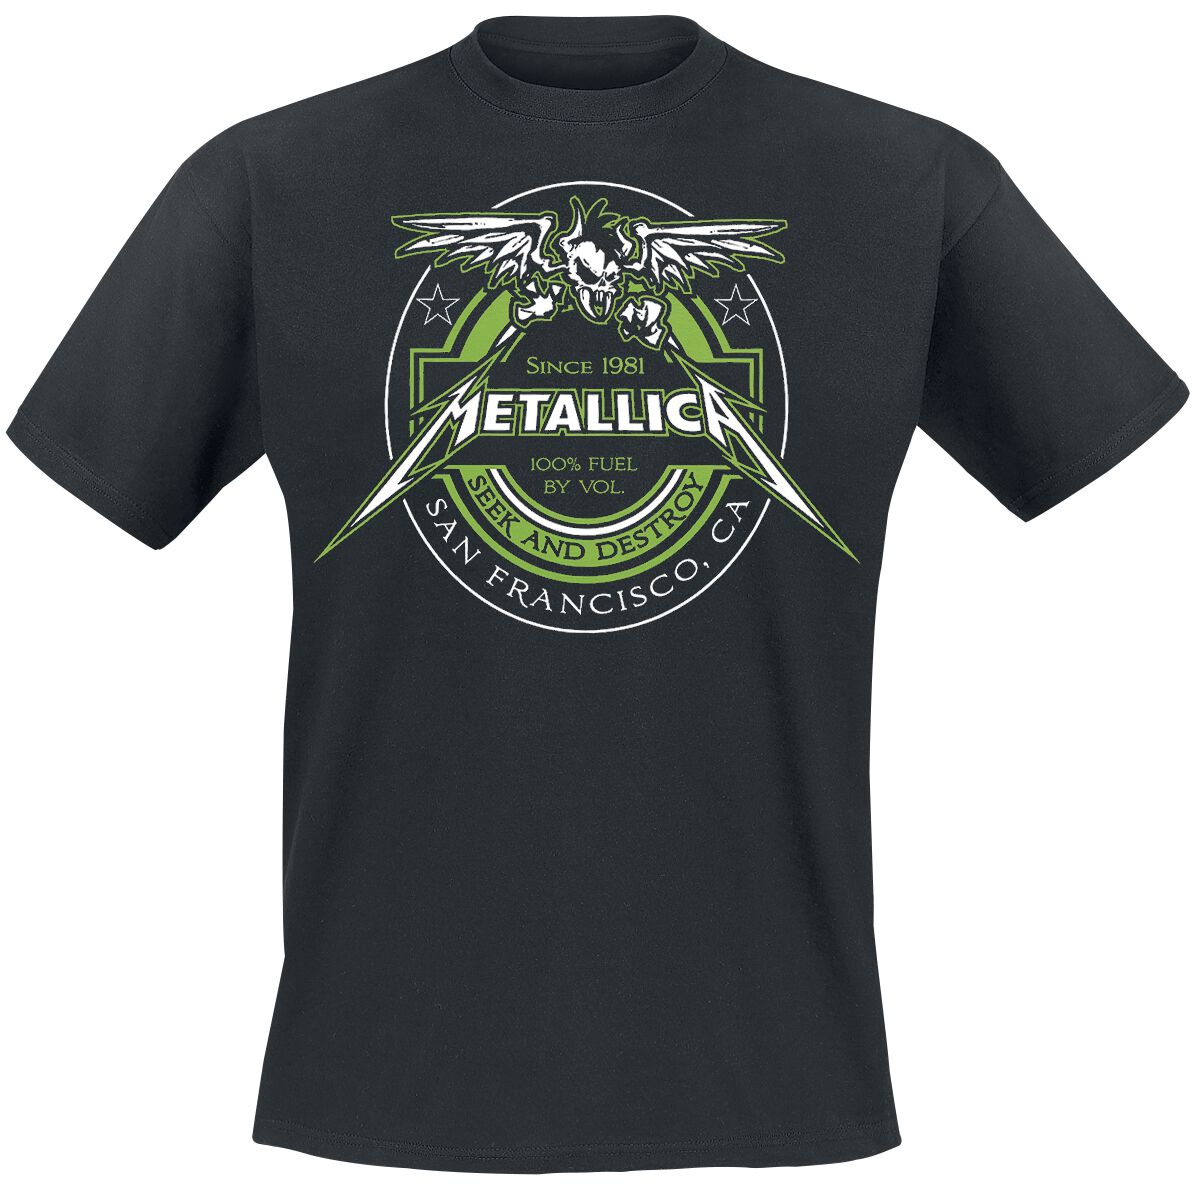 Metallica T-Shirt - 100% Fuel - Seek And Destroy - M bis 4XL - für Männer - Größe 4XL - schwarz  - Lizenziertes Merchandise!